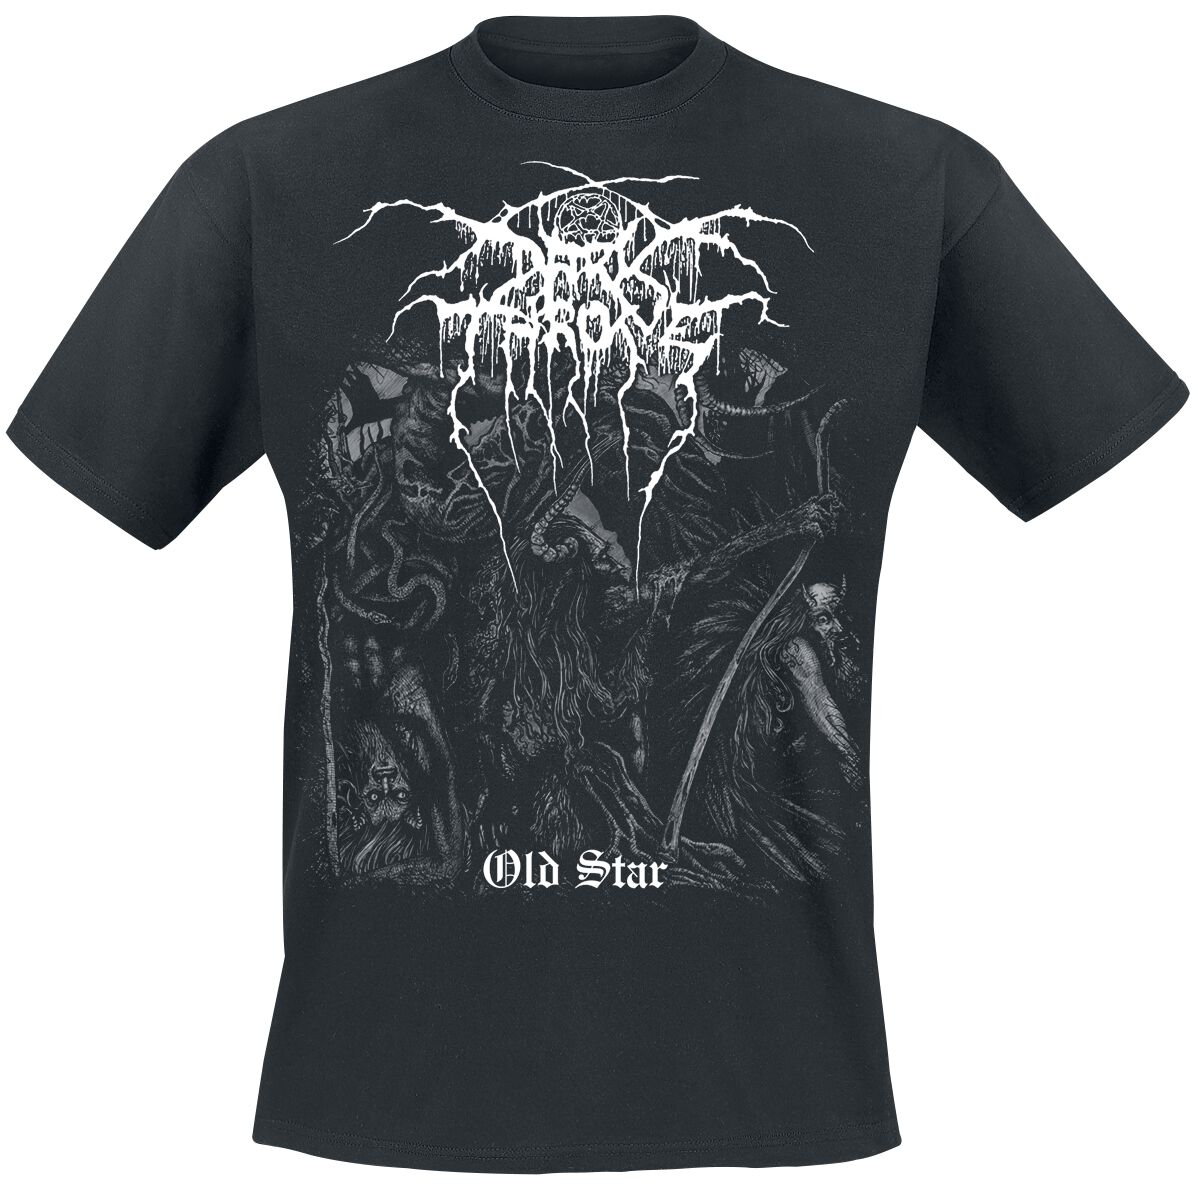 Darkthrone T-Shirt - Old Star - M bis XXL - für Männer - Größe L - schwarz  - Lizenziertes Merchandise!